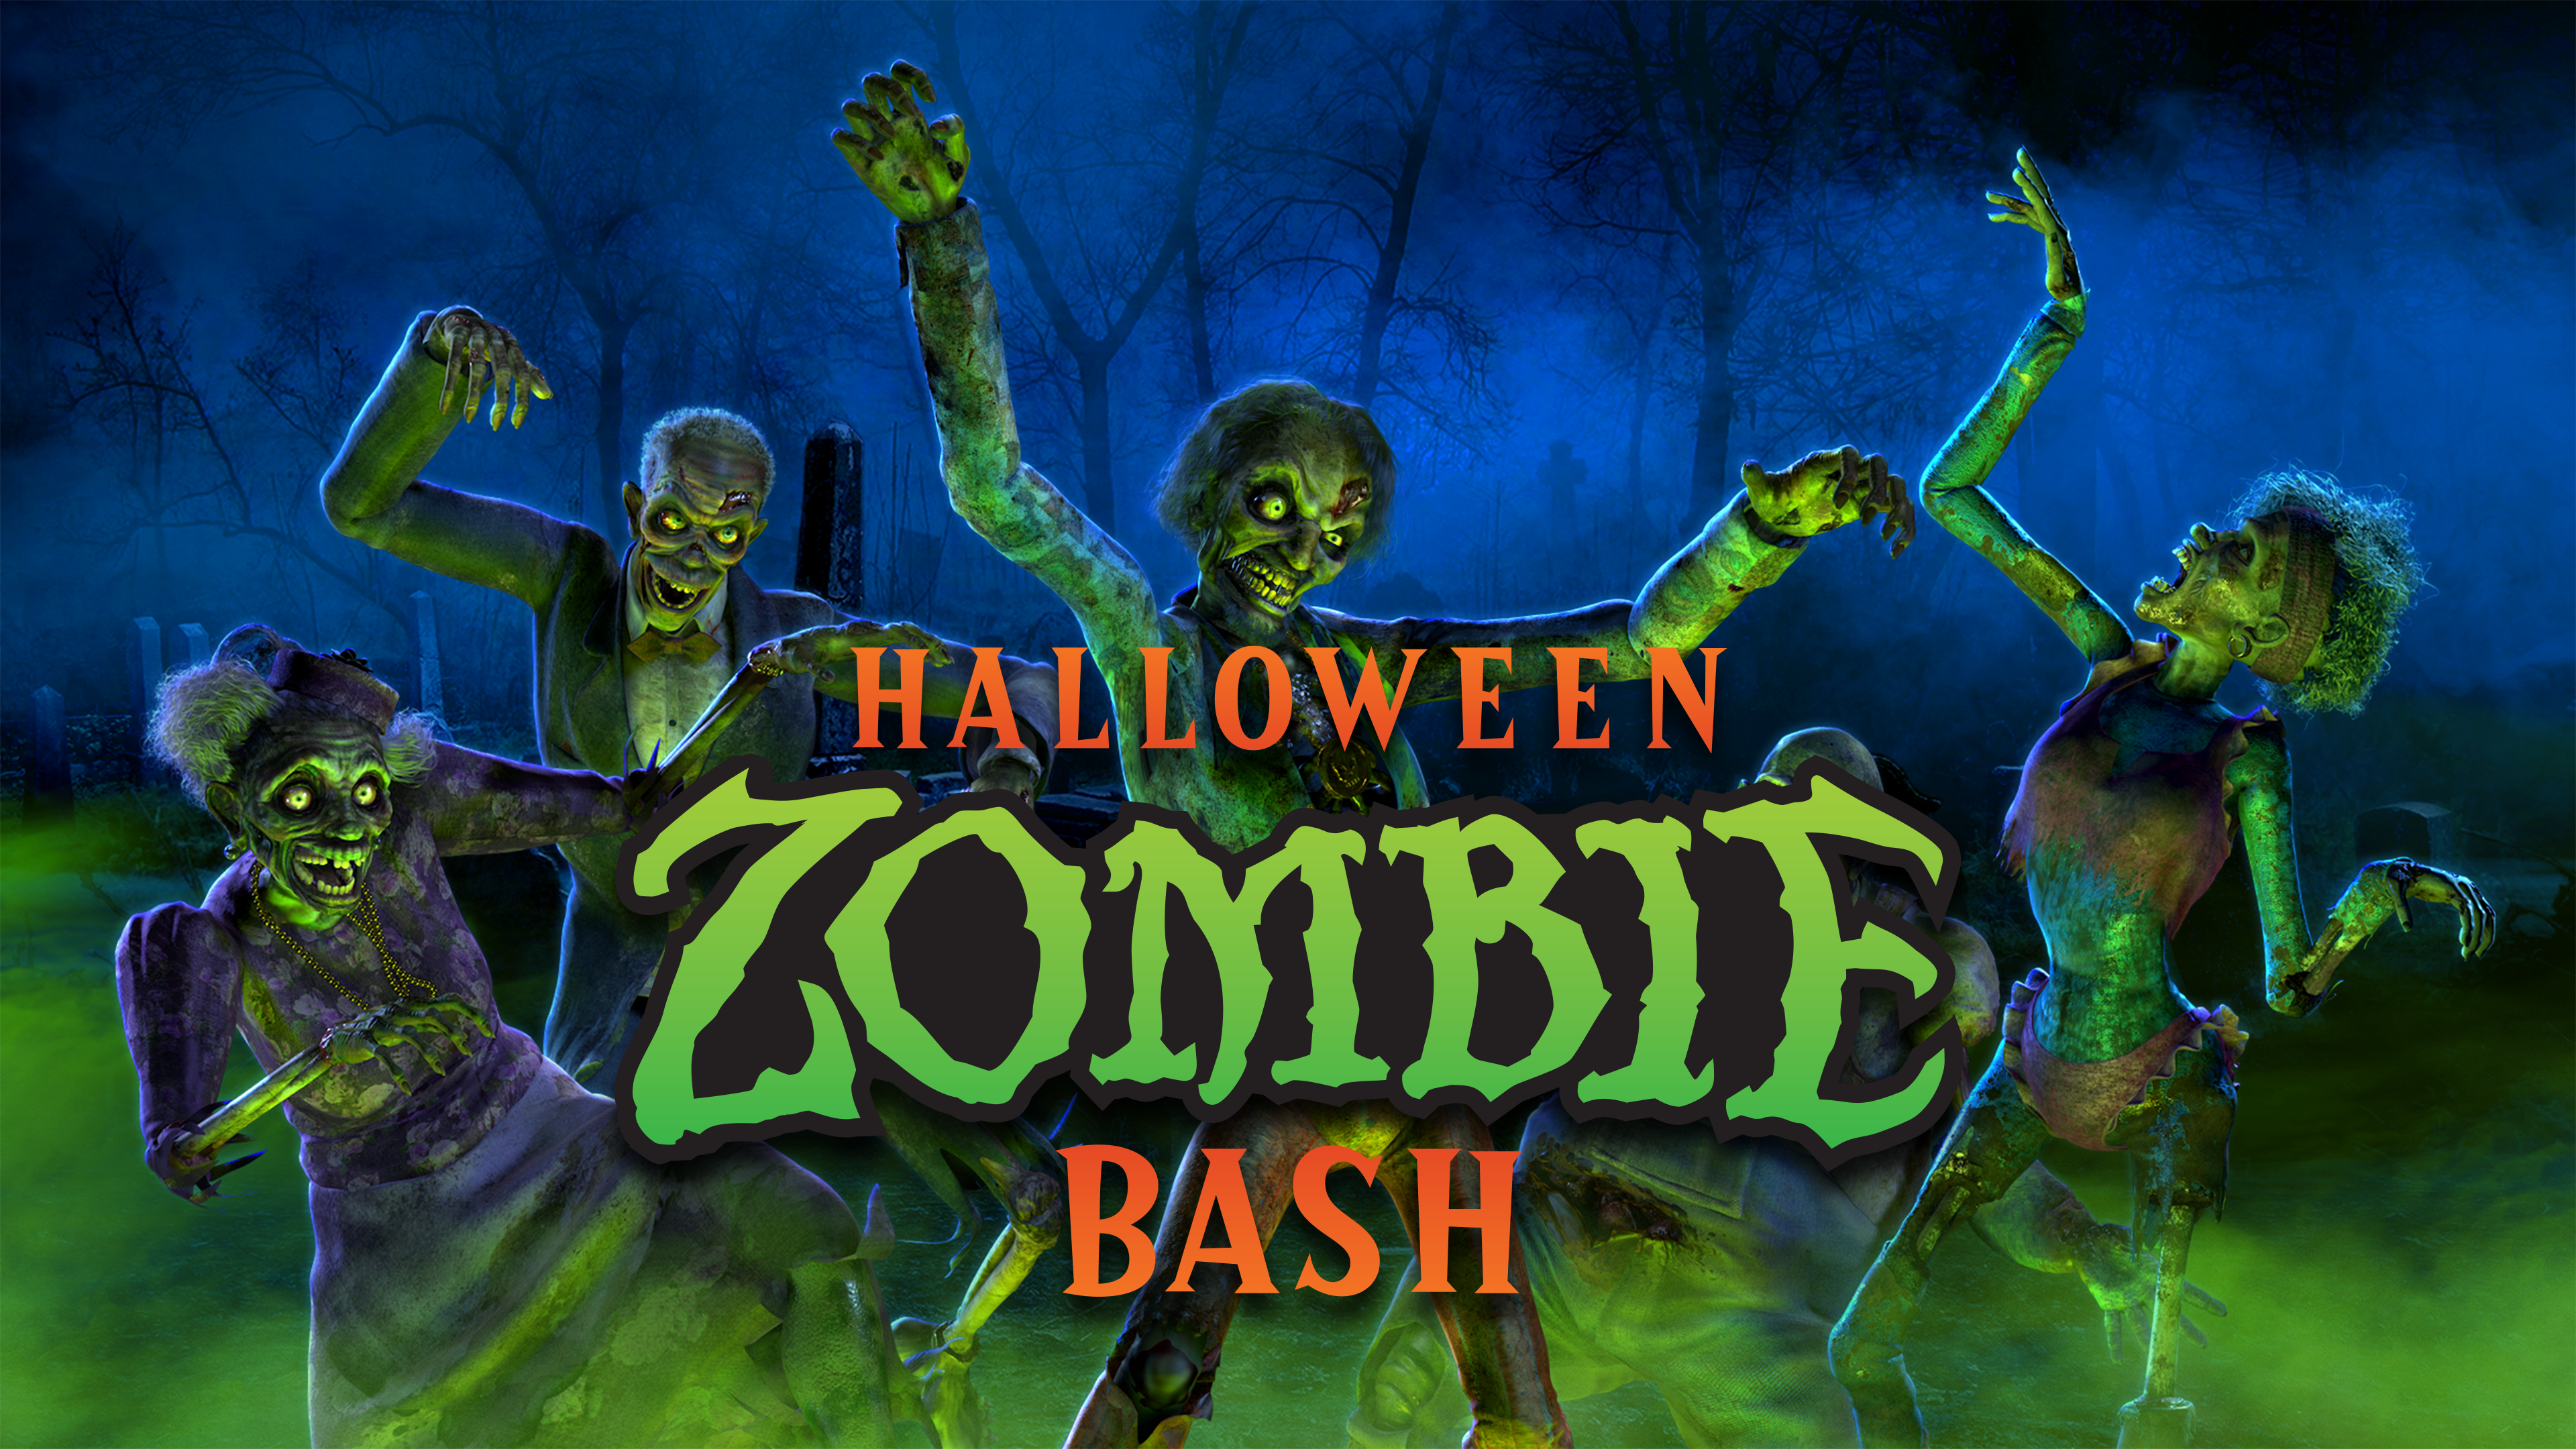 Halloween Zombie Bash - Atmos FX - 株式会社アーキサイト